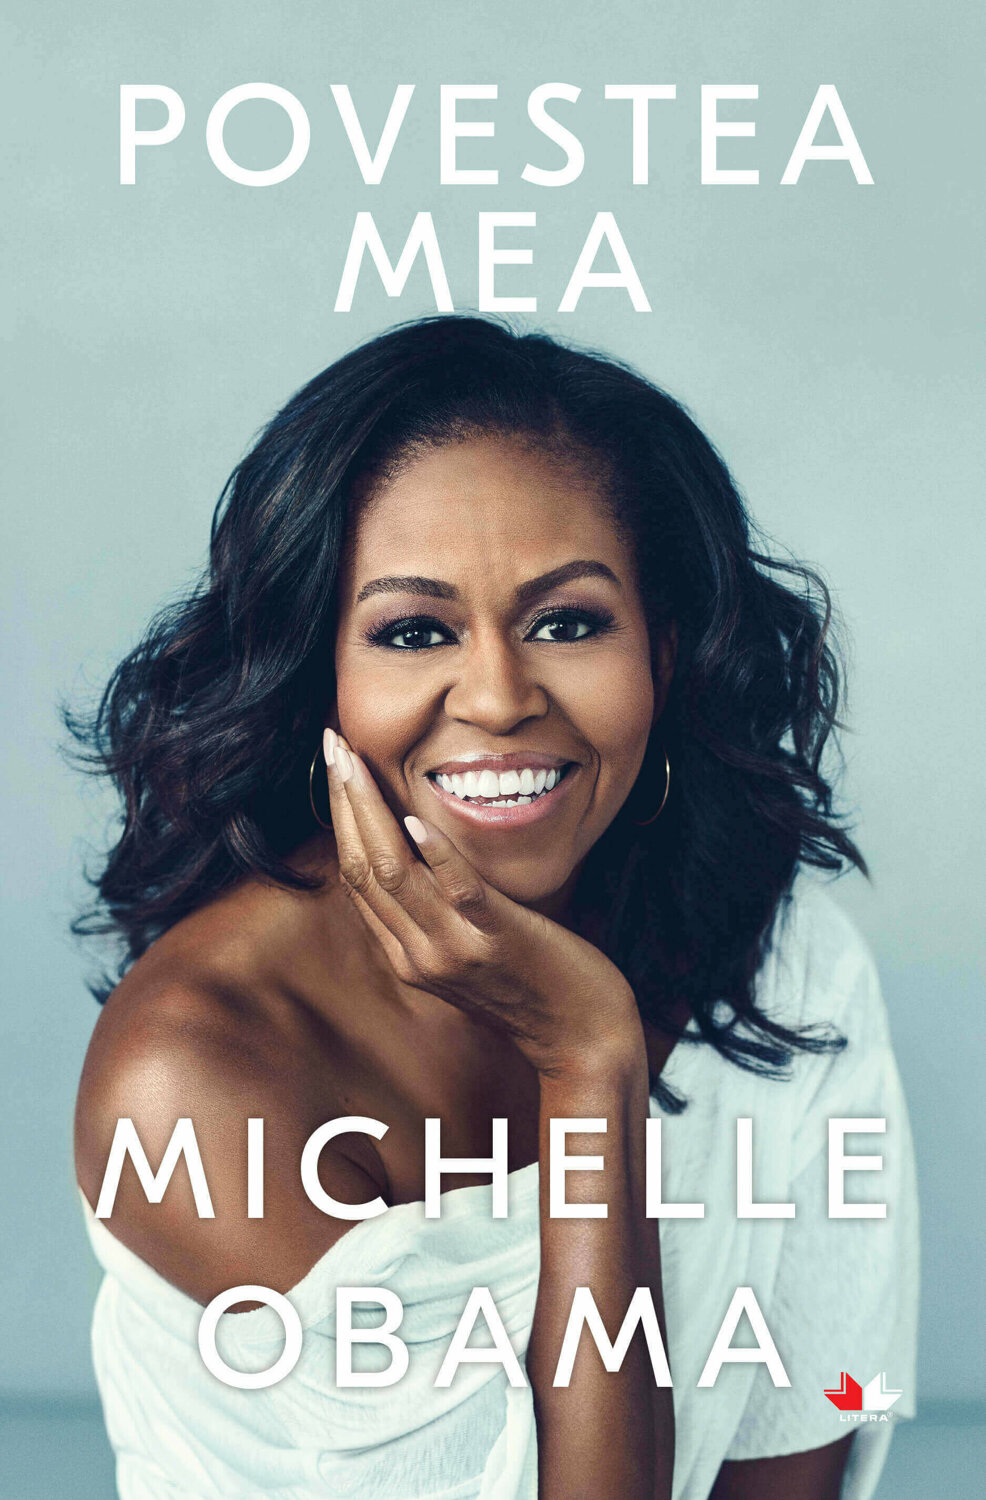 Michelle Obama Povestea mea, reducere mare